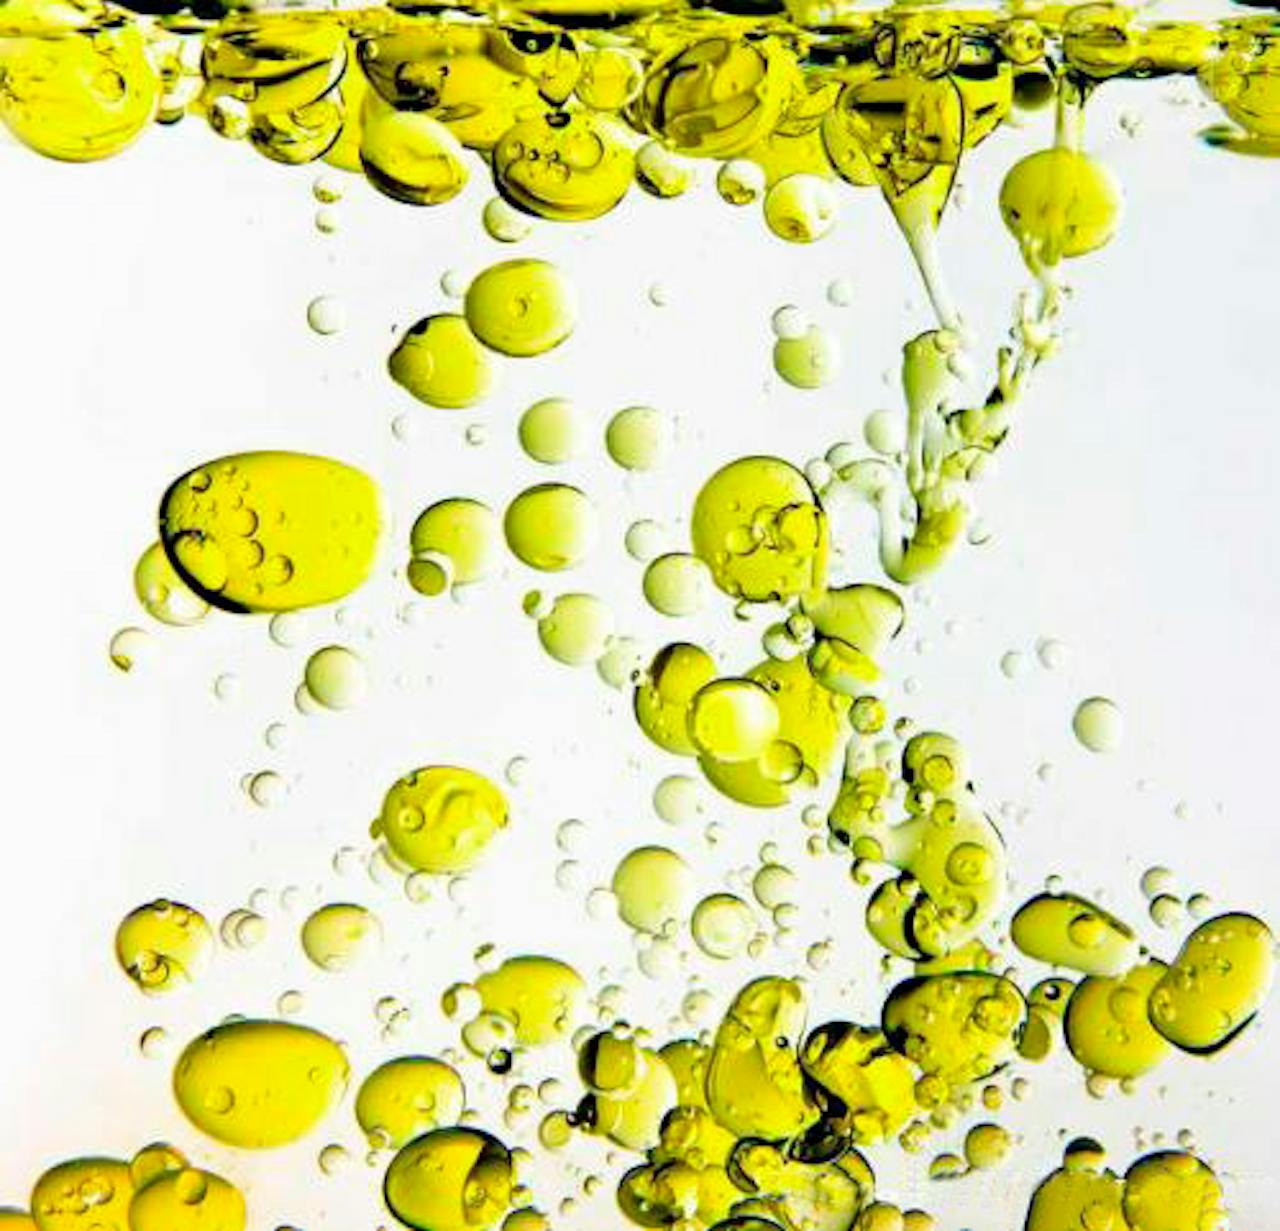 Olijfolie beweegt in de vorm van belletjes in water.